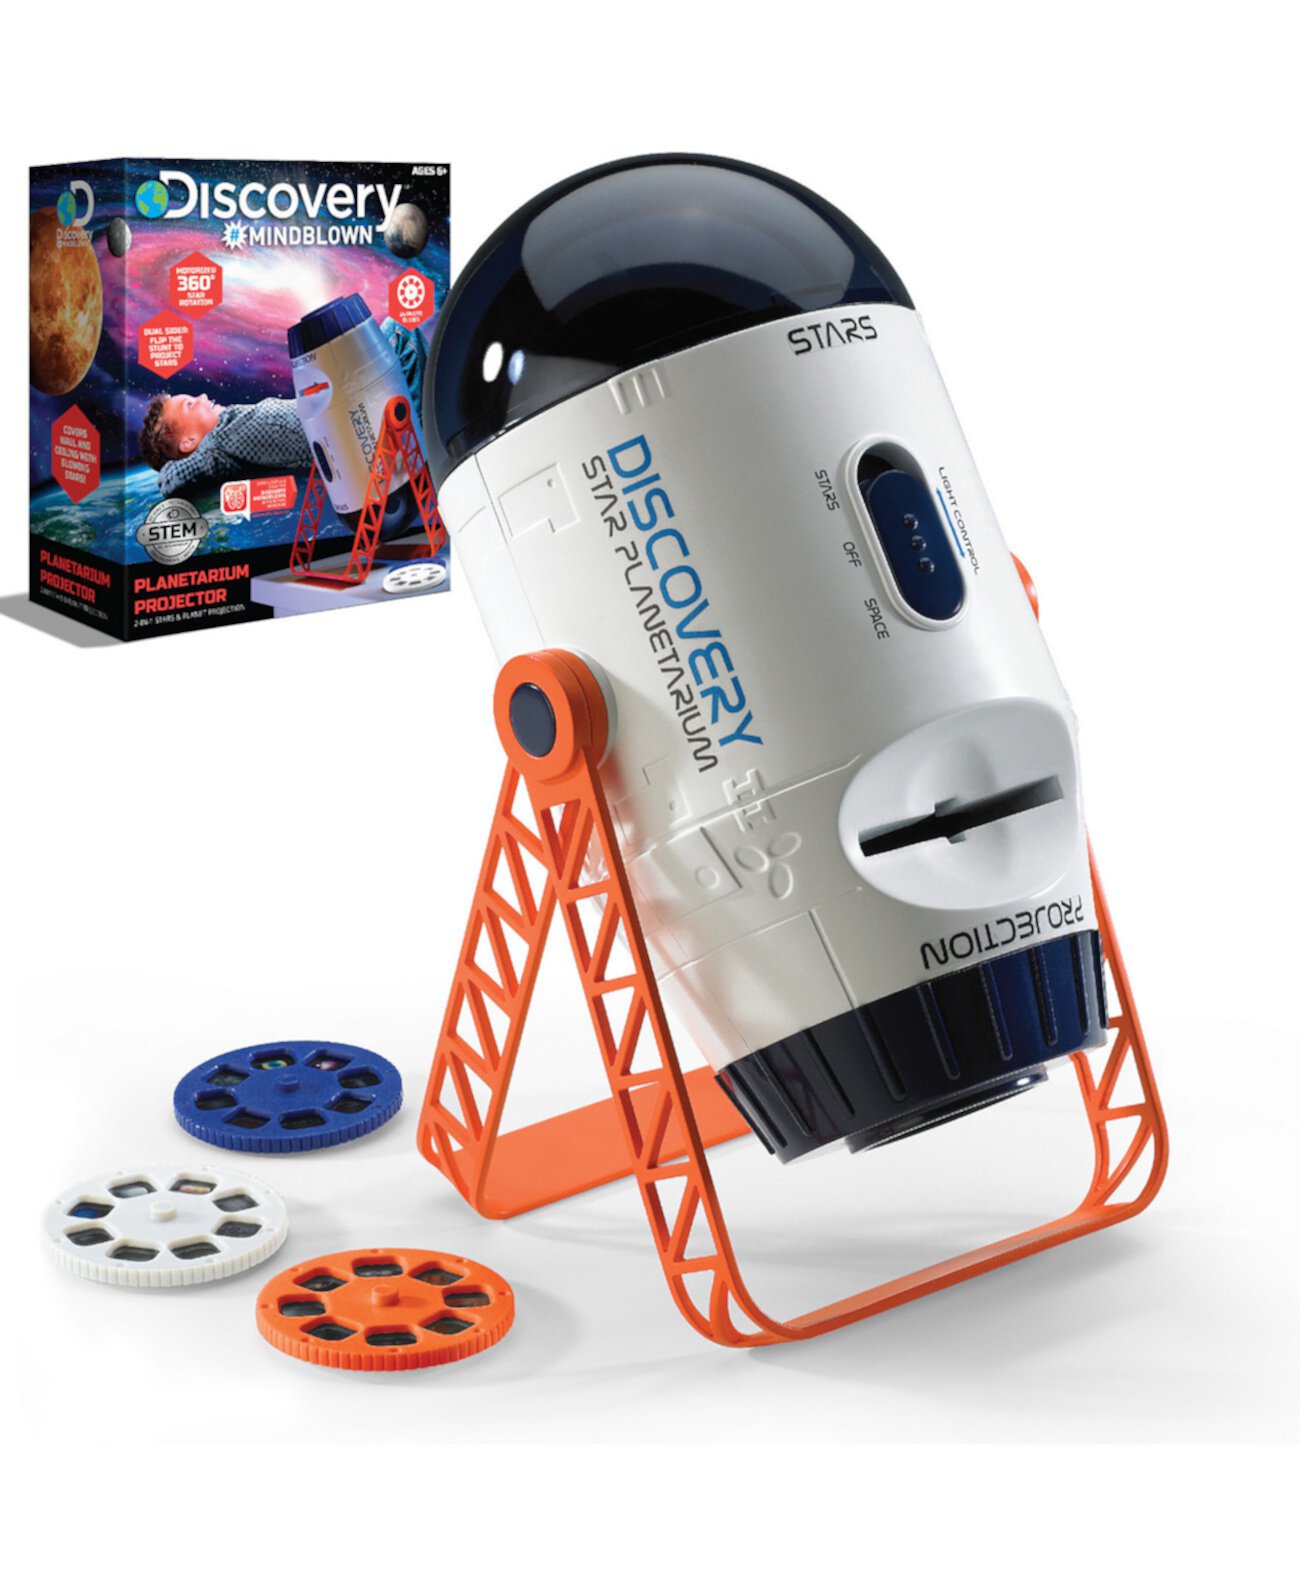 Игрушечный проектор Discovery Mindblown для космоса и планетария Discovery Mindblown